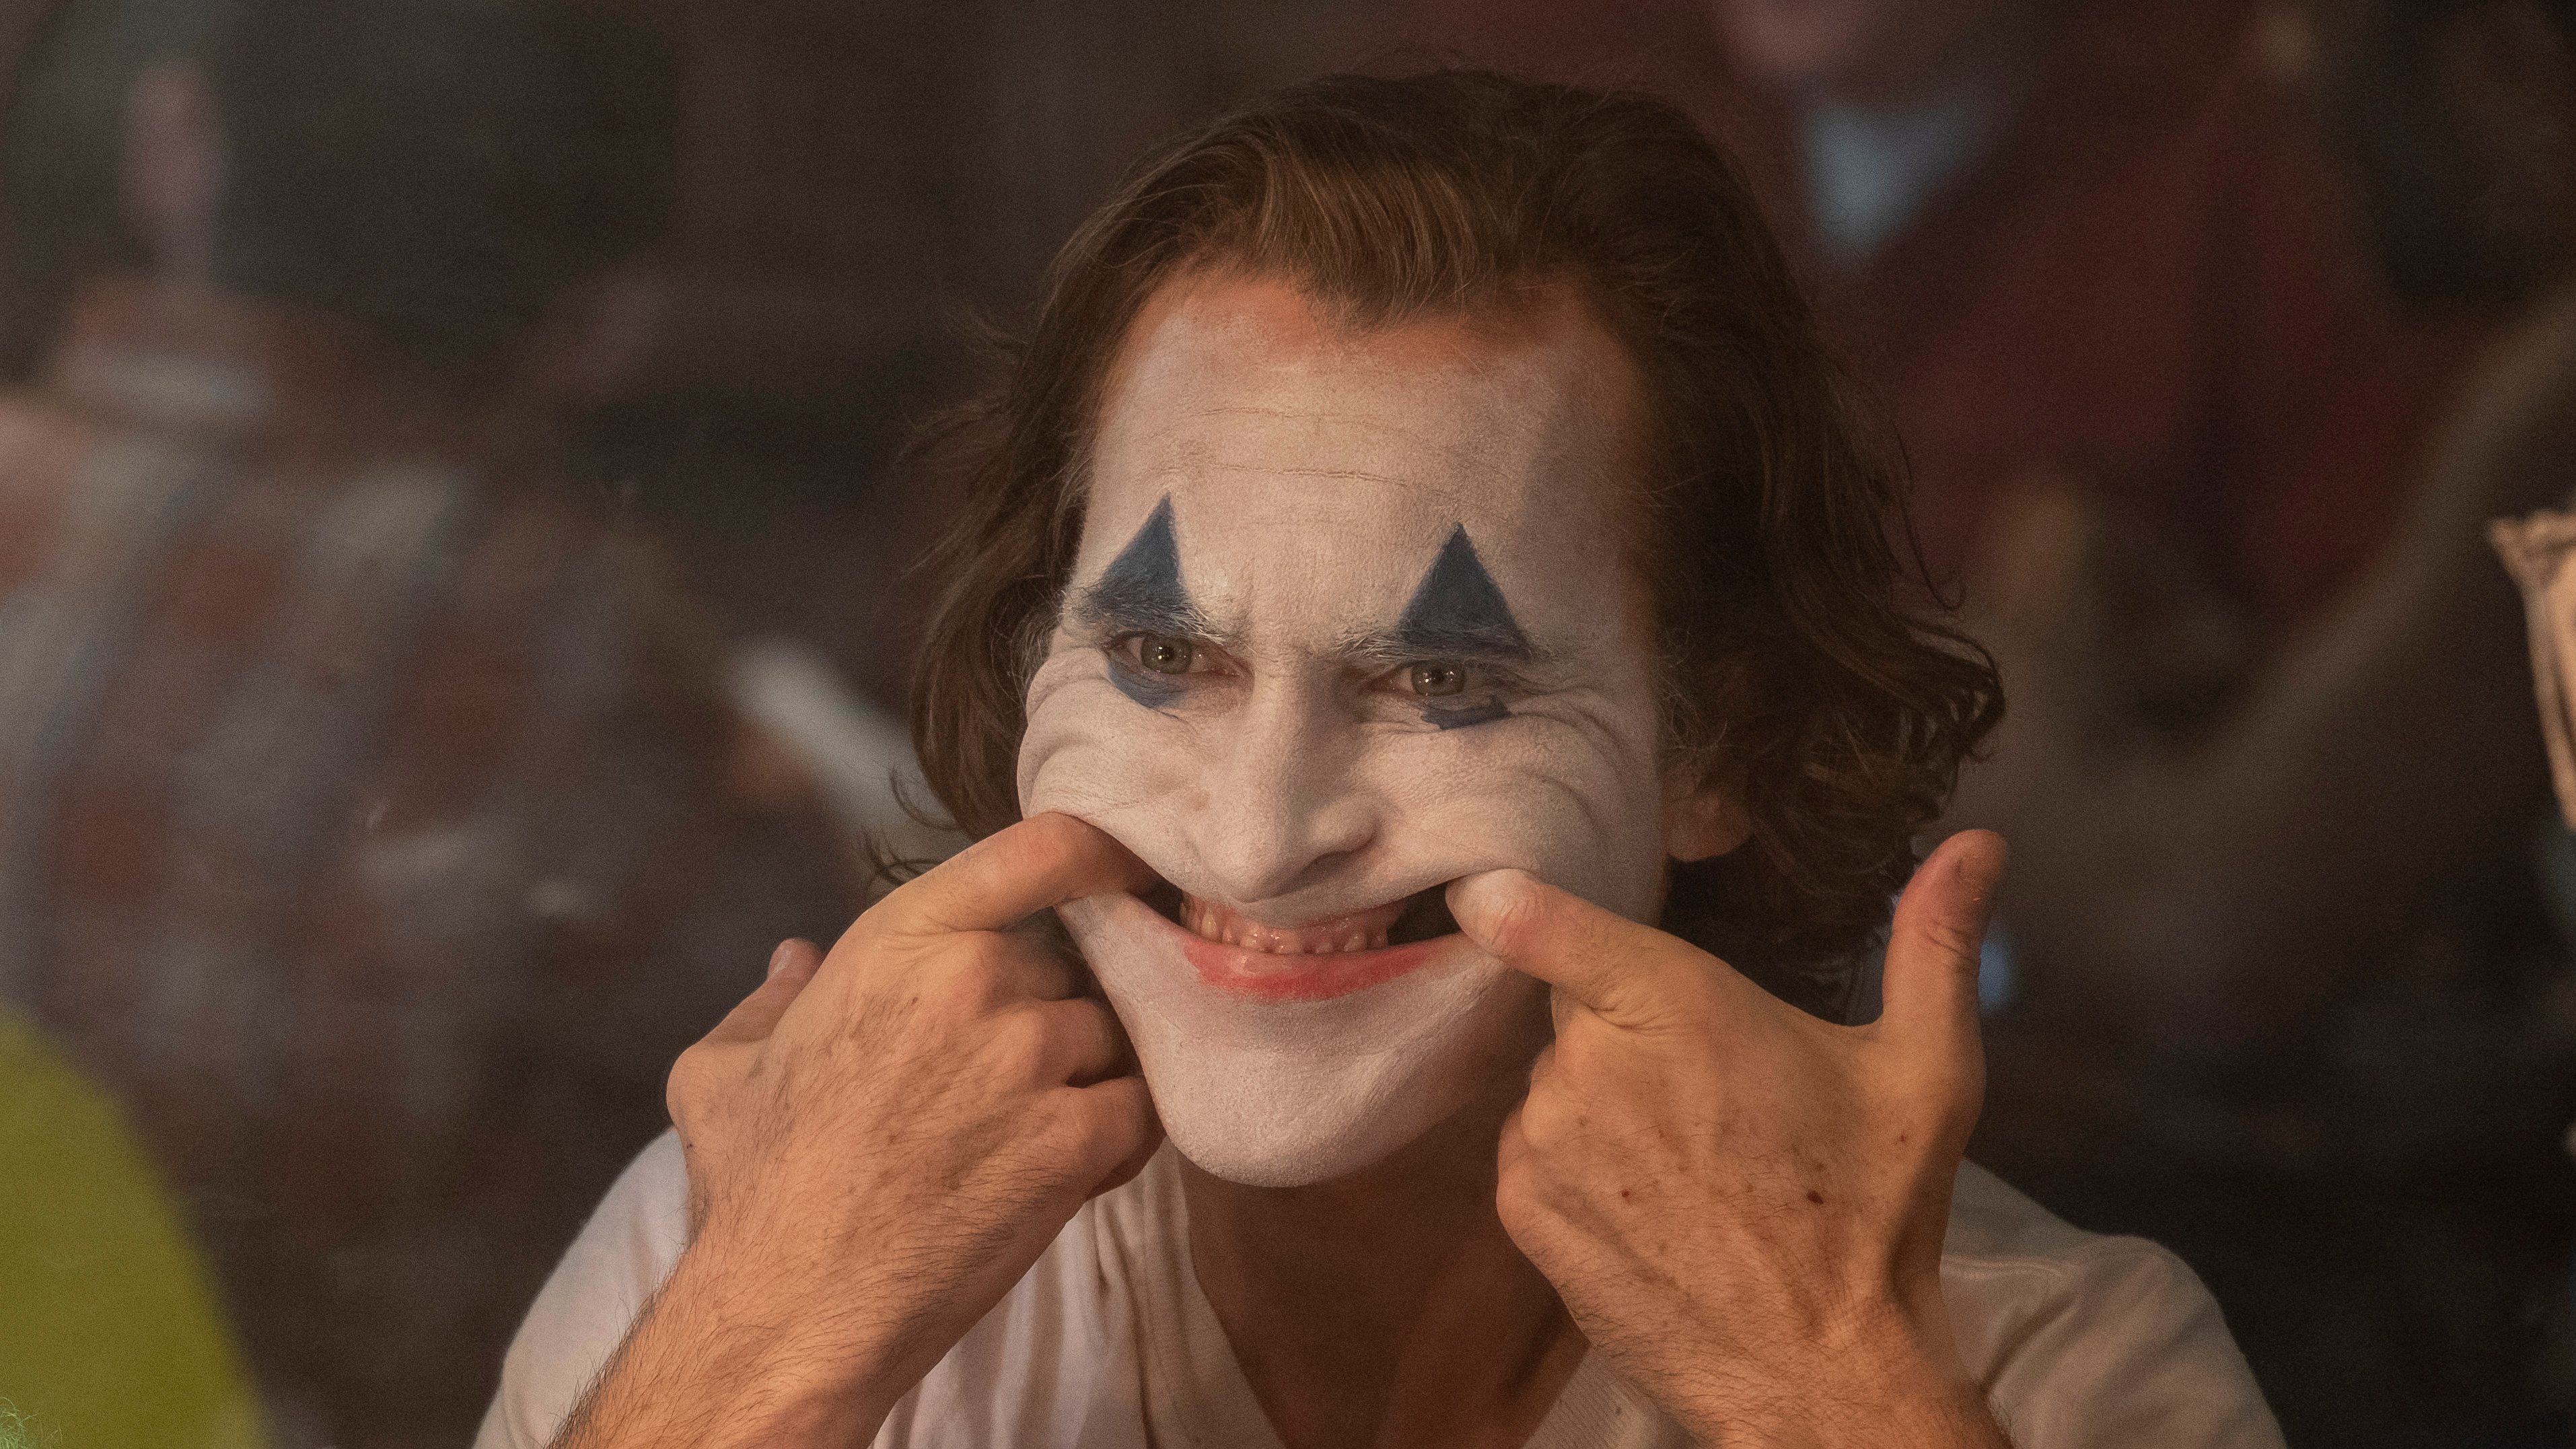 Joker Movie 2019